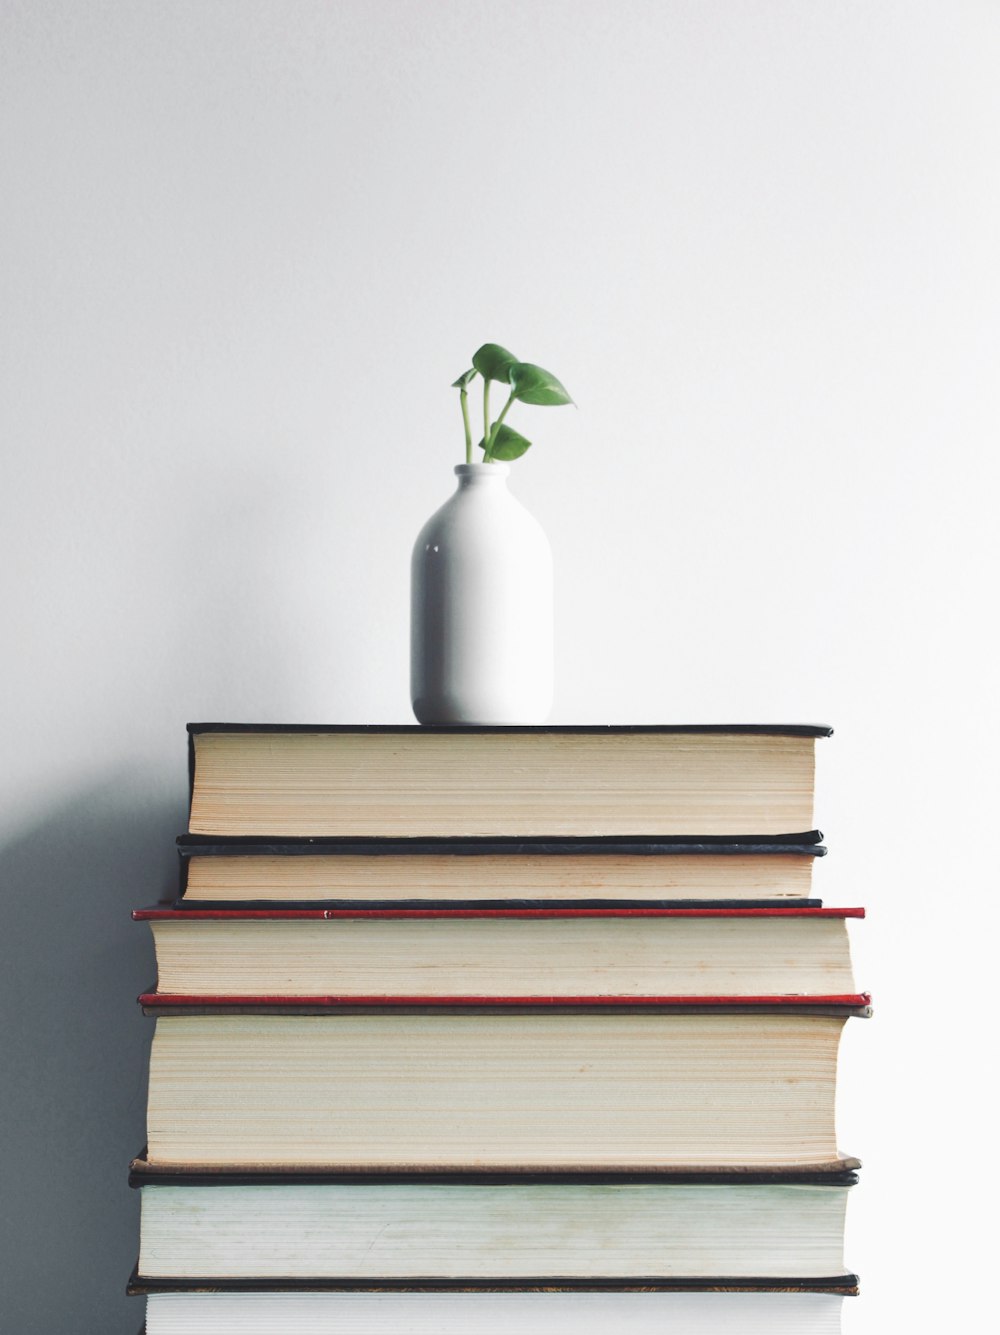 Jarrón de cerámica blanca con planta verde encima de los libros